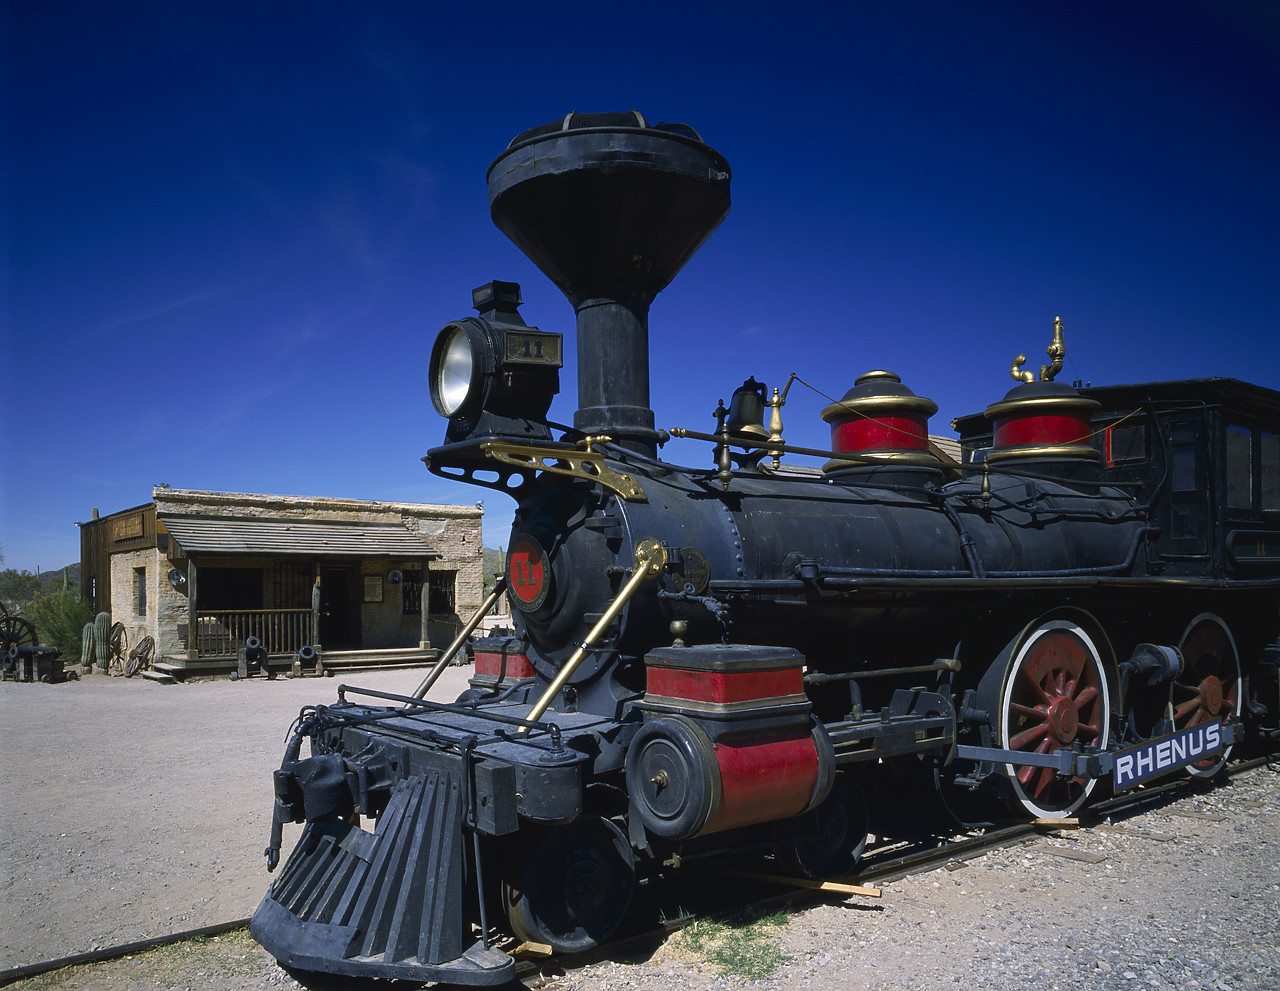 #891946 - Old Western Steam Locomotive, Old Tucson, Arizona, USA